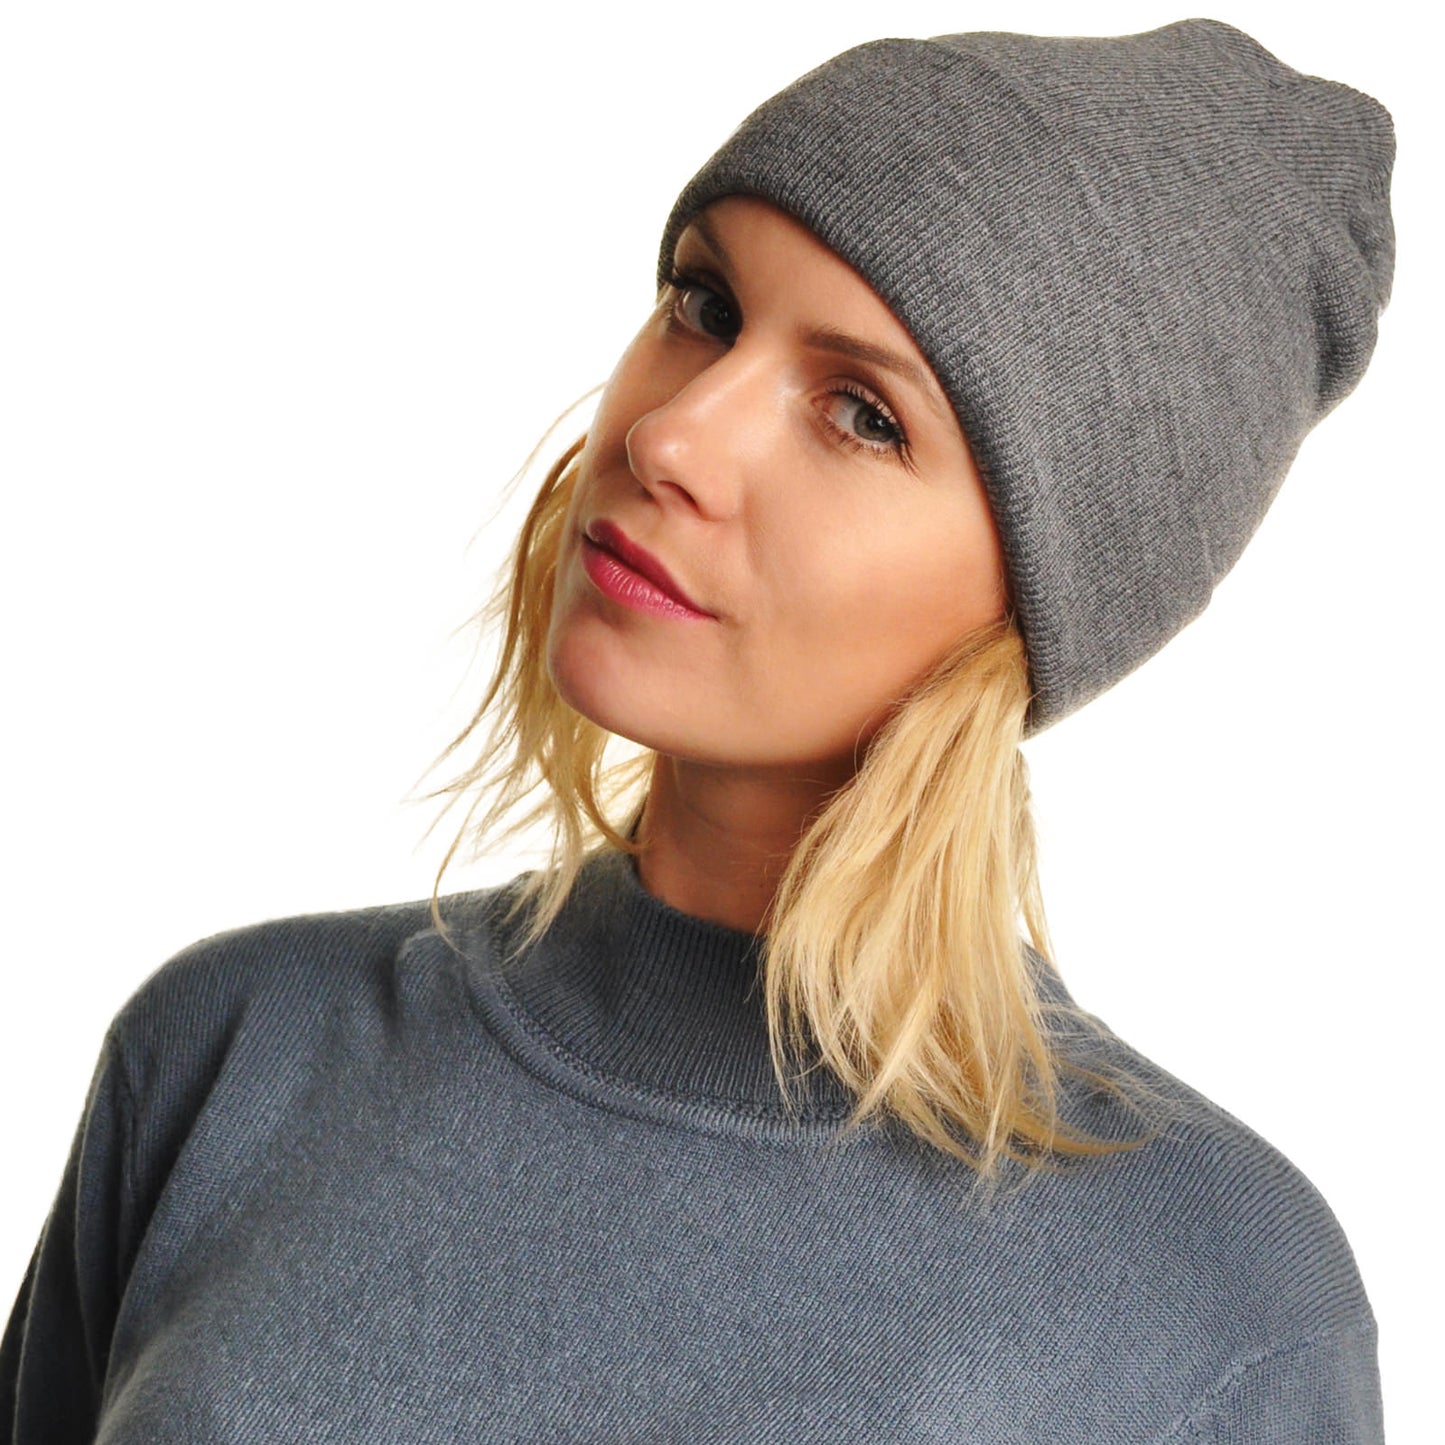 Knit Basic Color Unisex Adult Beanies Cap Hat (6-Pack)